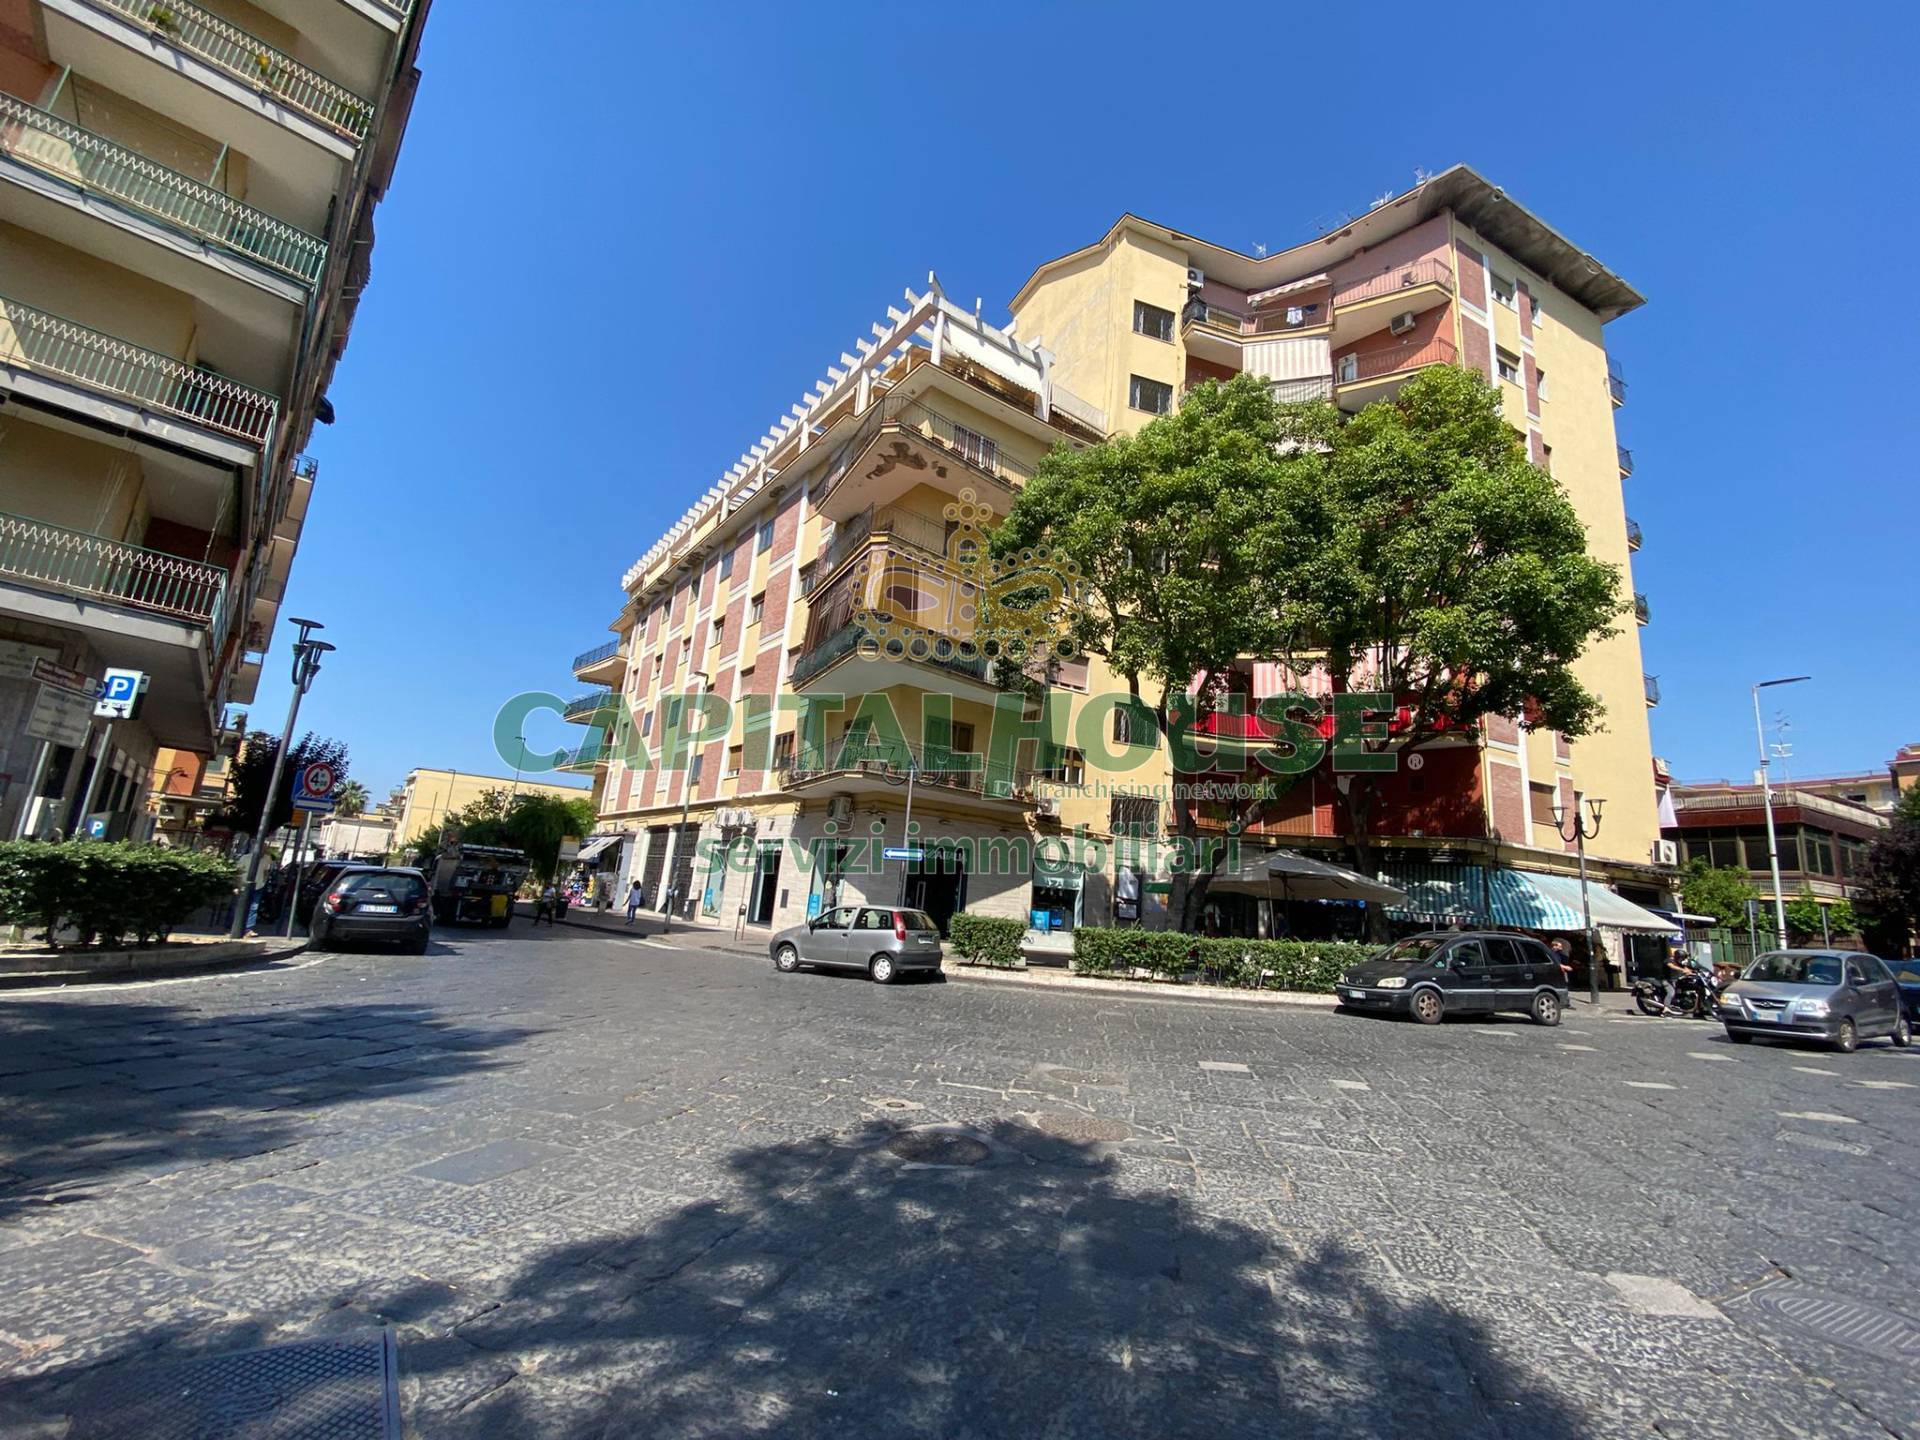 Appartamento in vendita a San Giorgio a Cremano, 5 locali, prezzo € 395.000 | CambioCasa.it